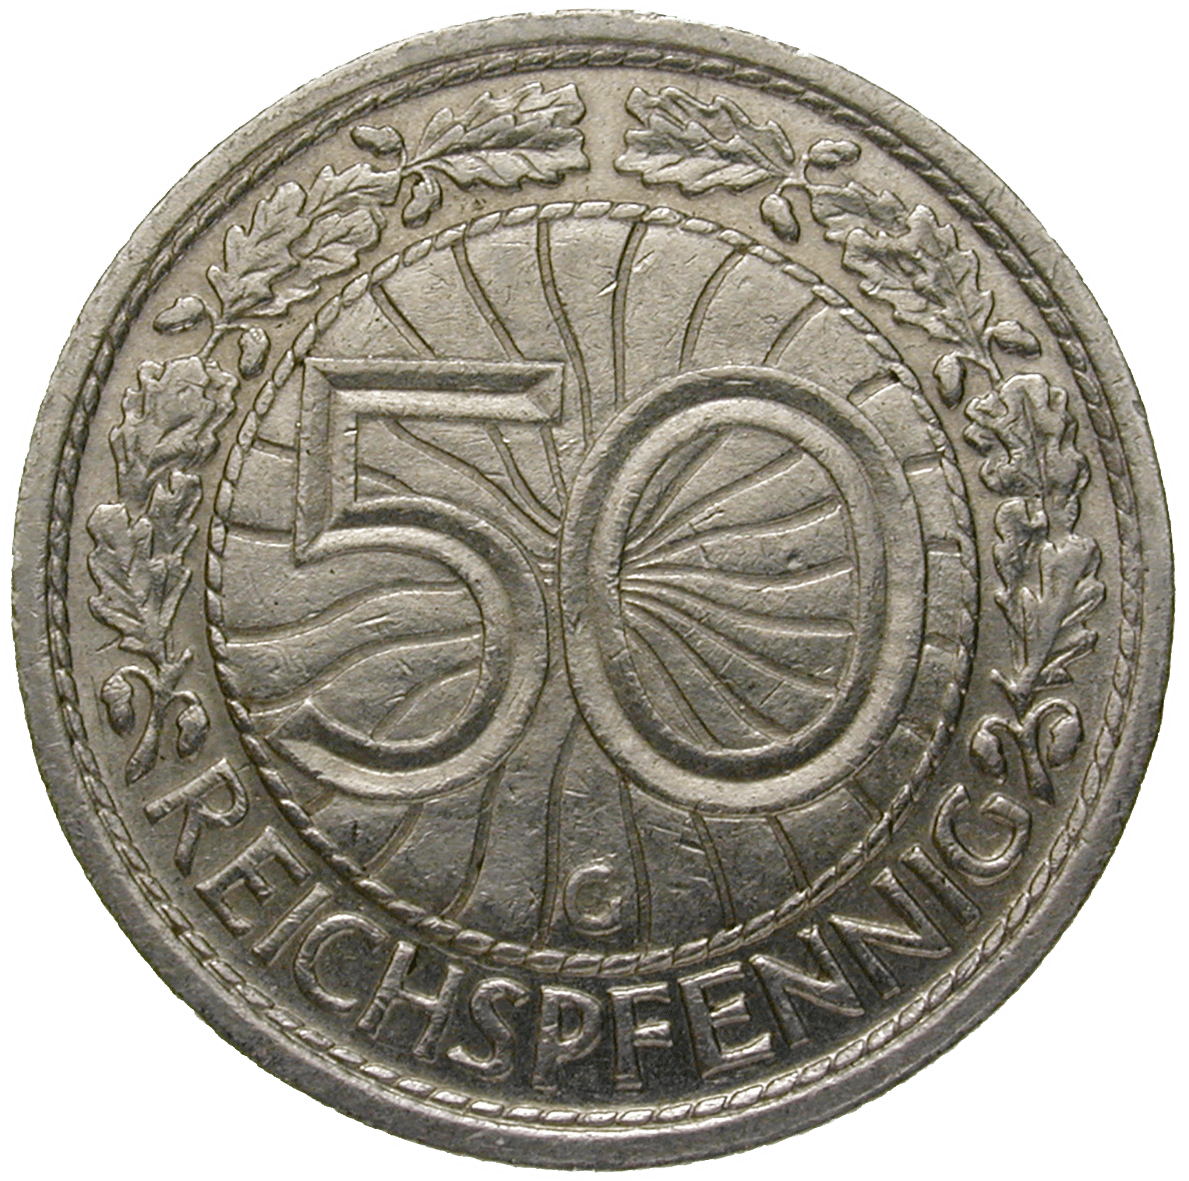 Deutsches Reich, Weimarer Republik, 50 Reichspfennig 1933 (reverse)